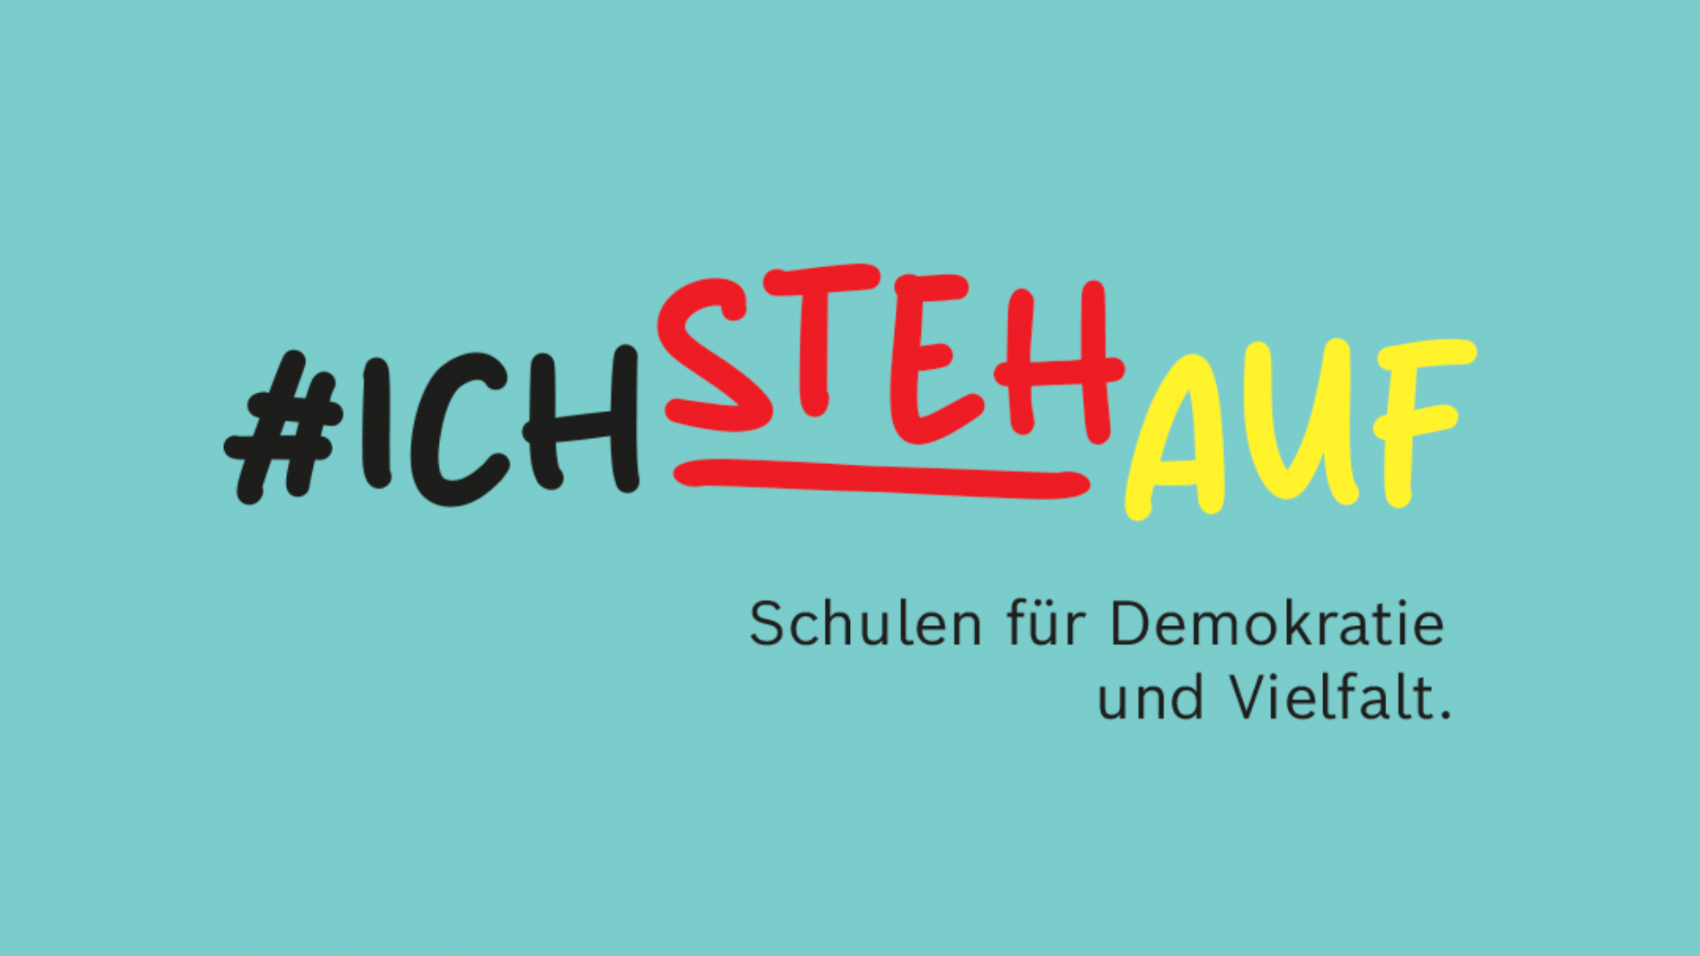 2024-Ichstehauf (8 x 5.3 cm) (16 x 9 cm)